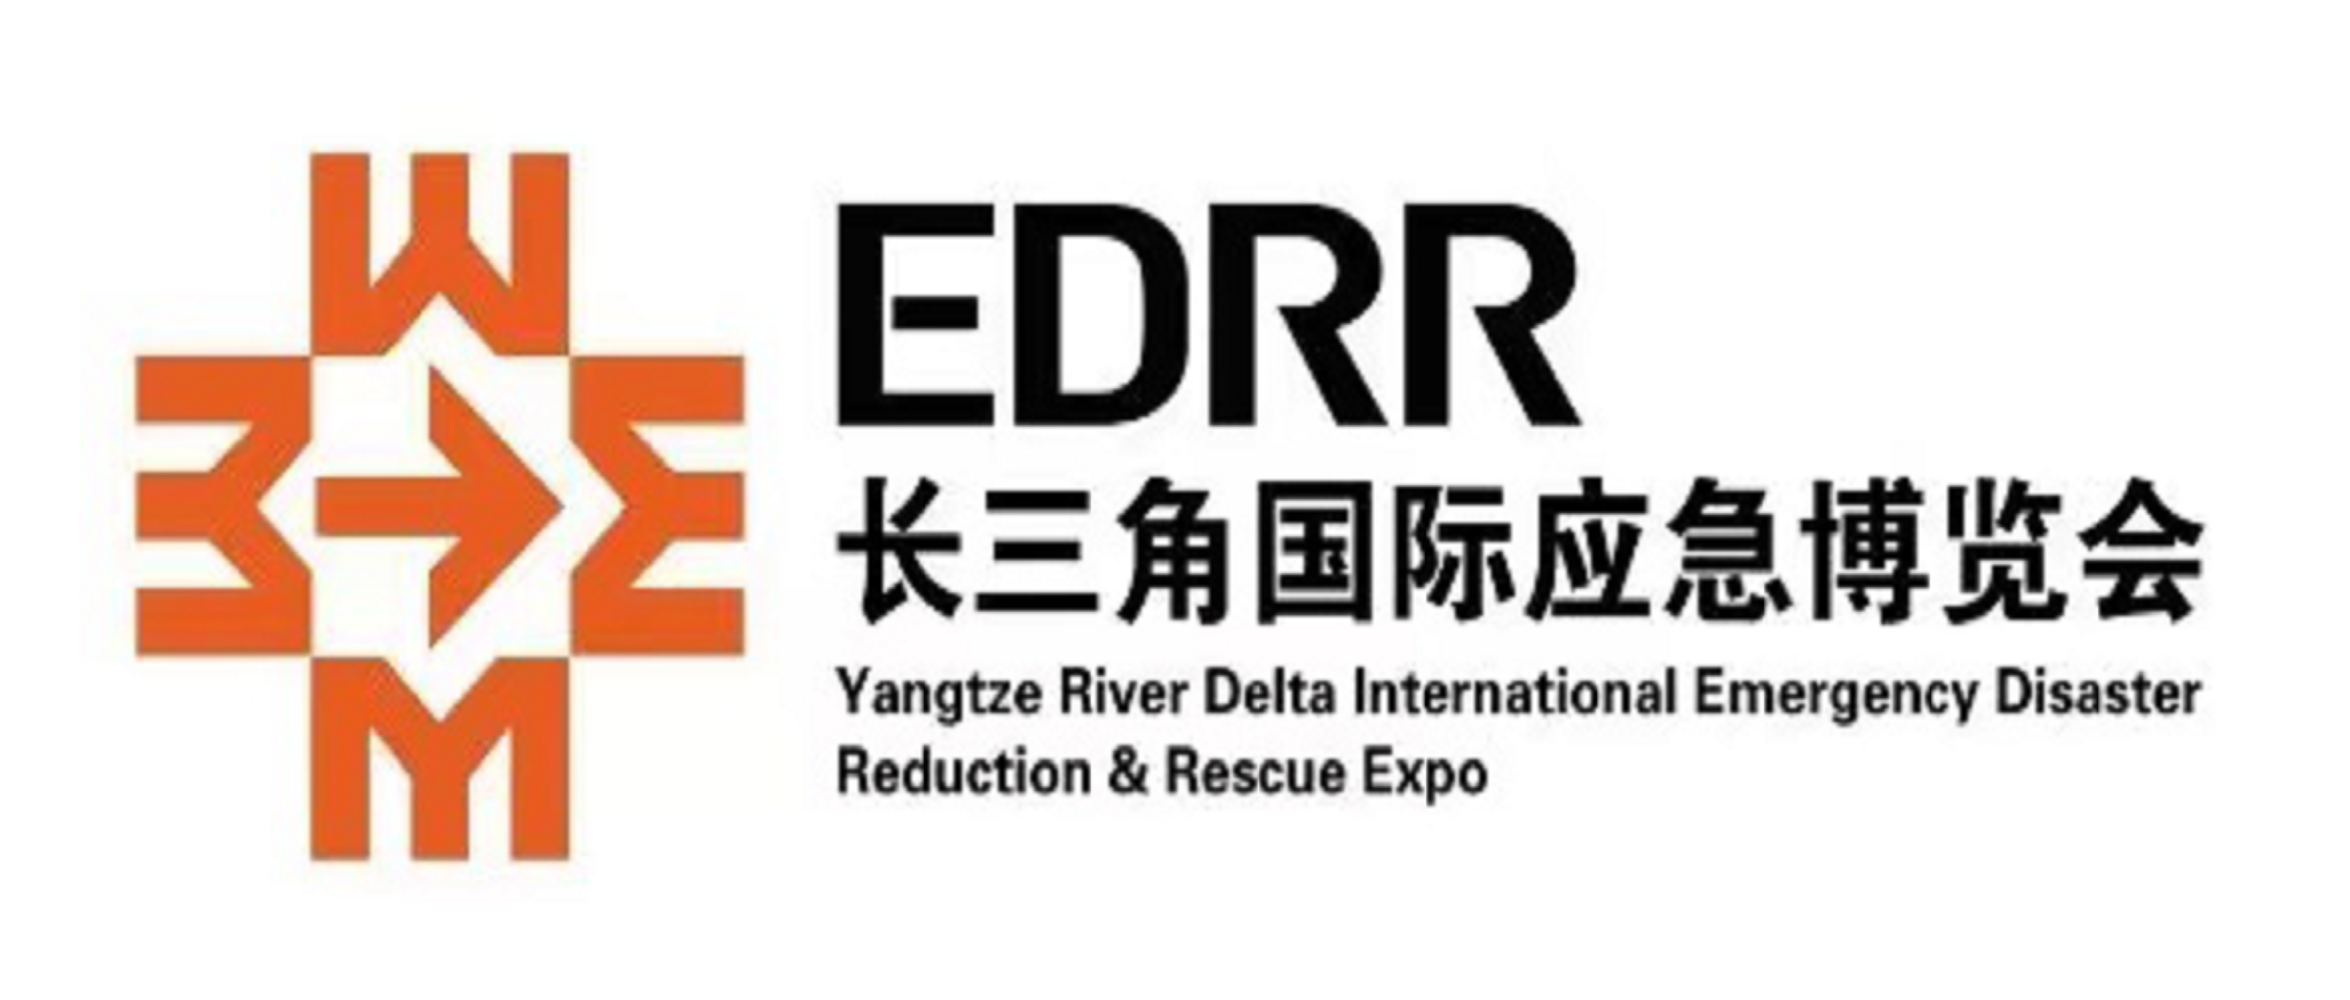 长三角国际应急减灾和救援博览会 EDRR